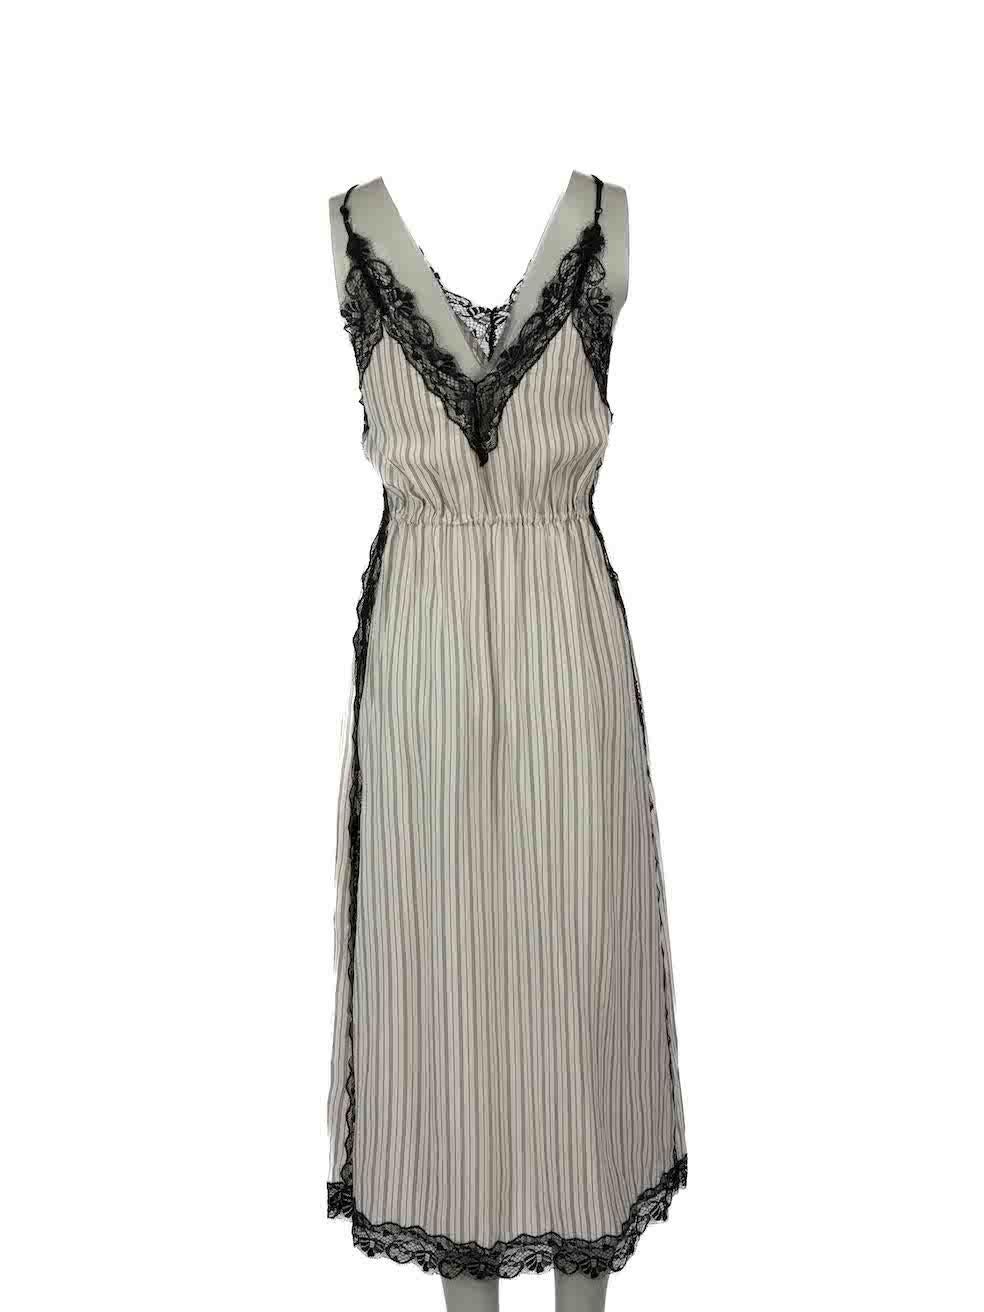 Sandro Ecru Striped Lace Trim Midi Dress Size M In Good Condition For Sale In London, GB